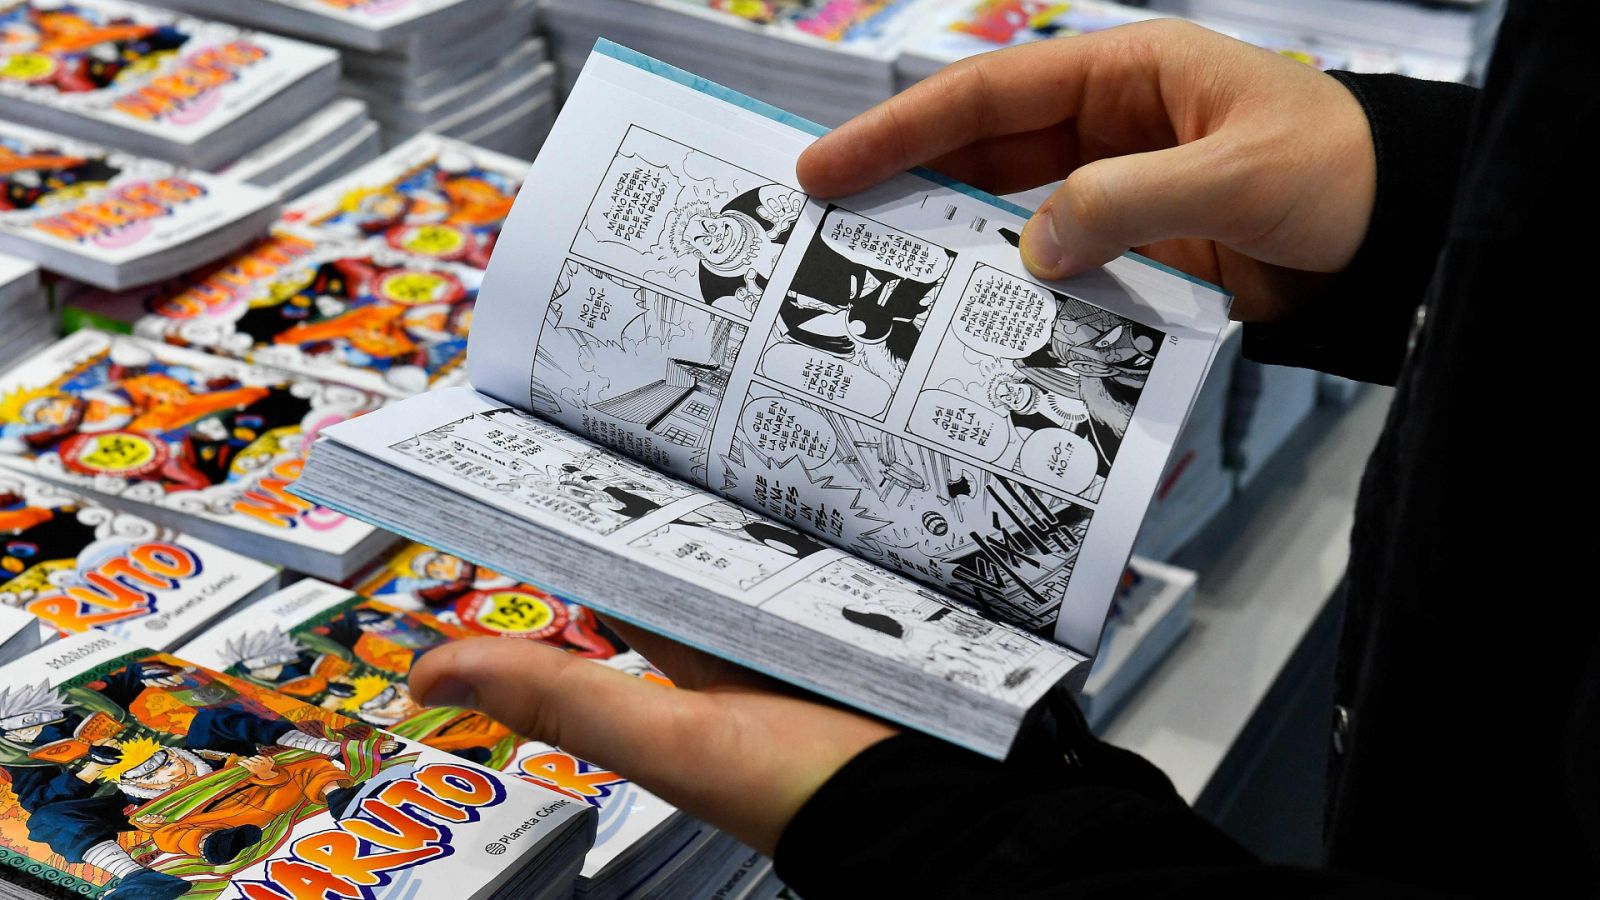 REPORTAJE: Anime y manga: ¿cómo ha crecido su consumo en la pandemia?